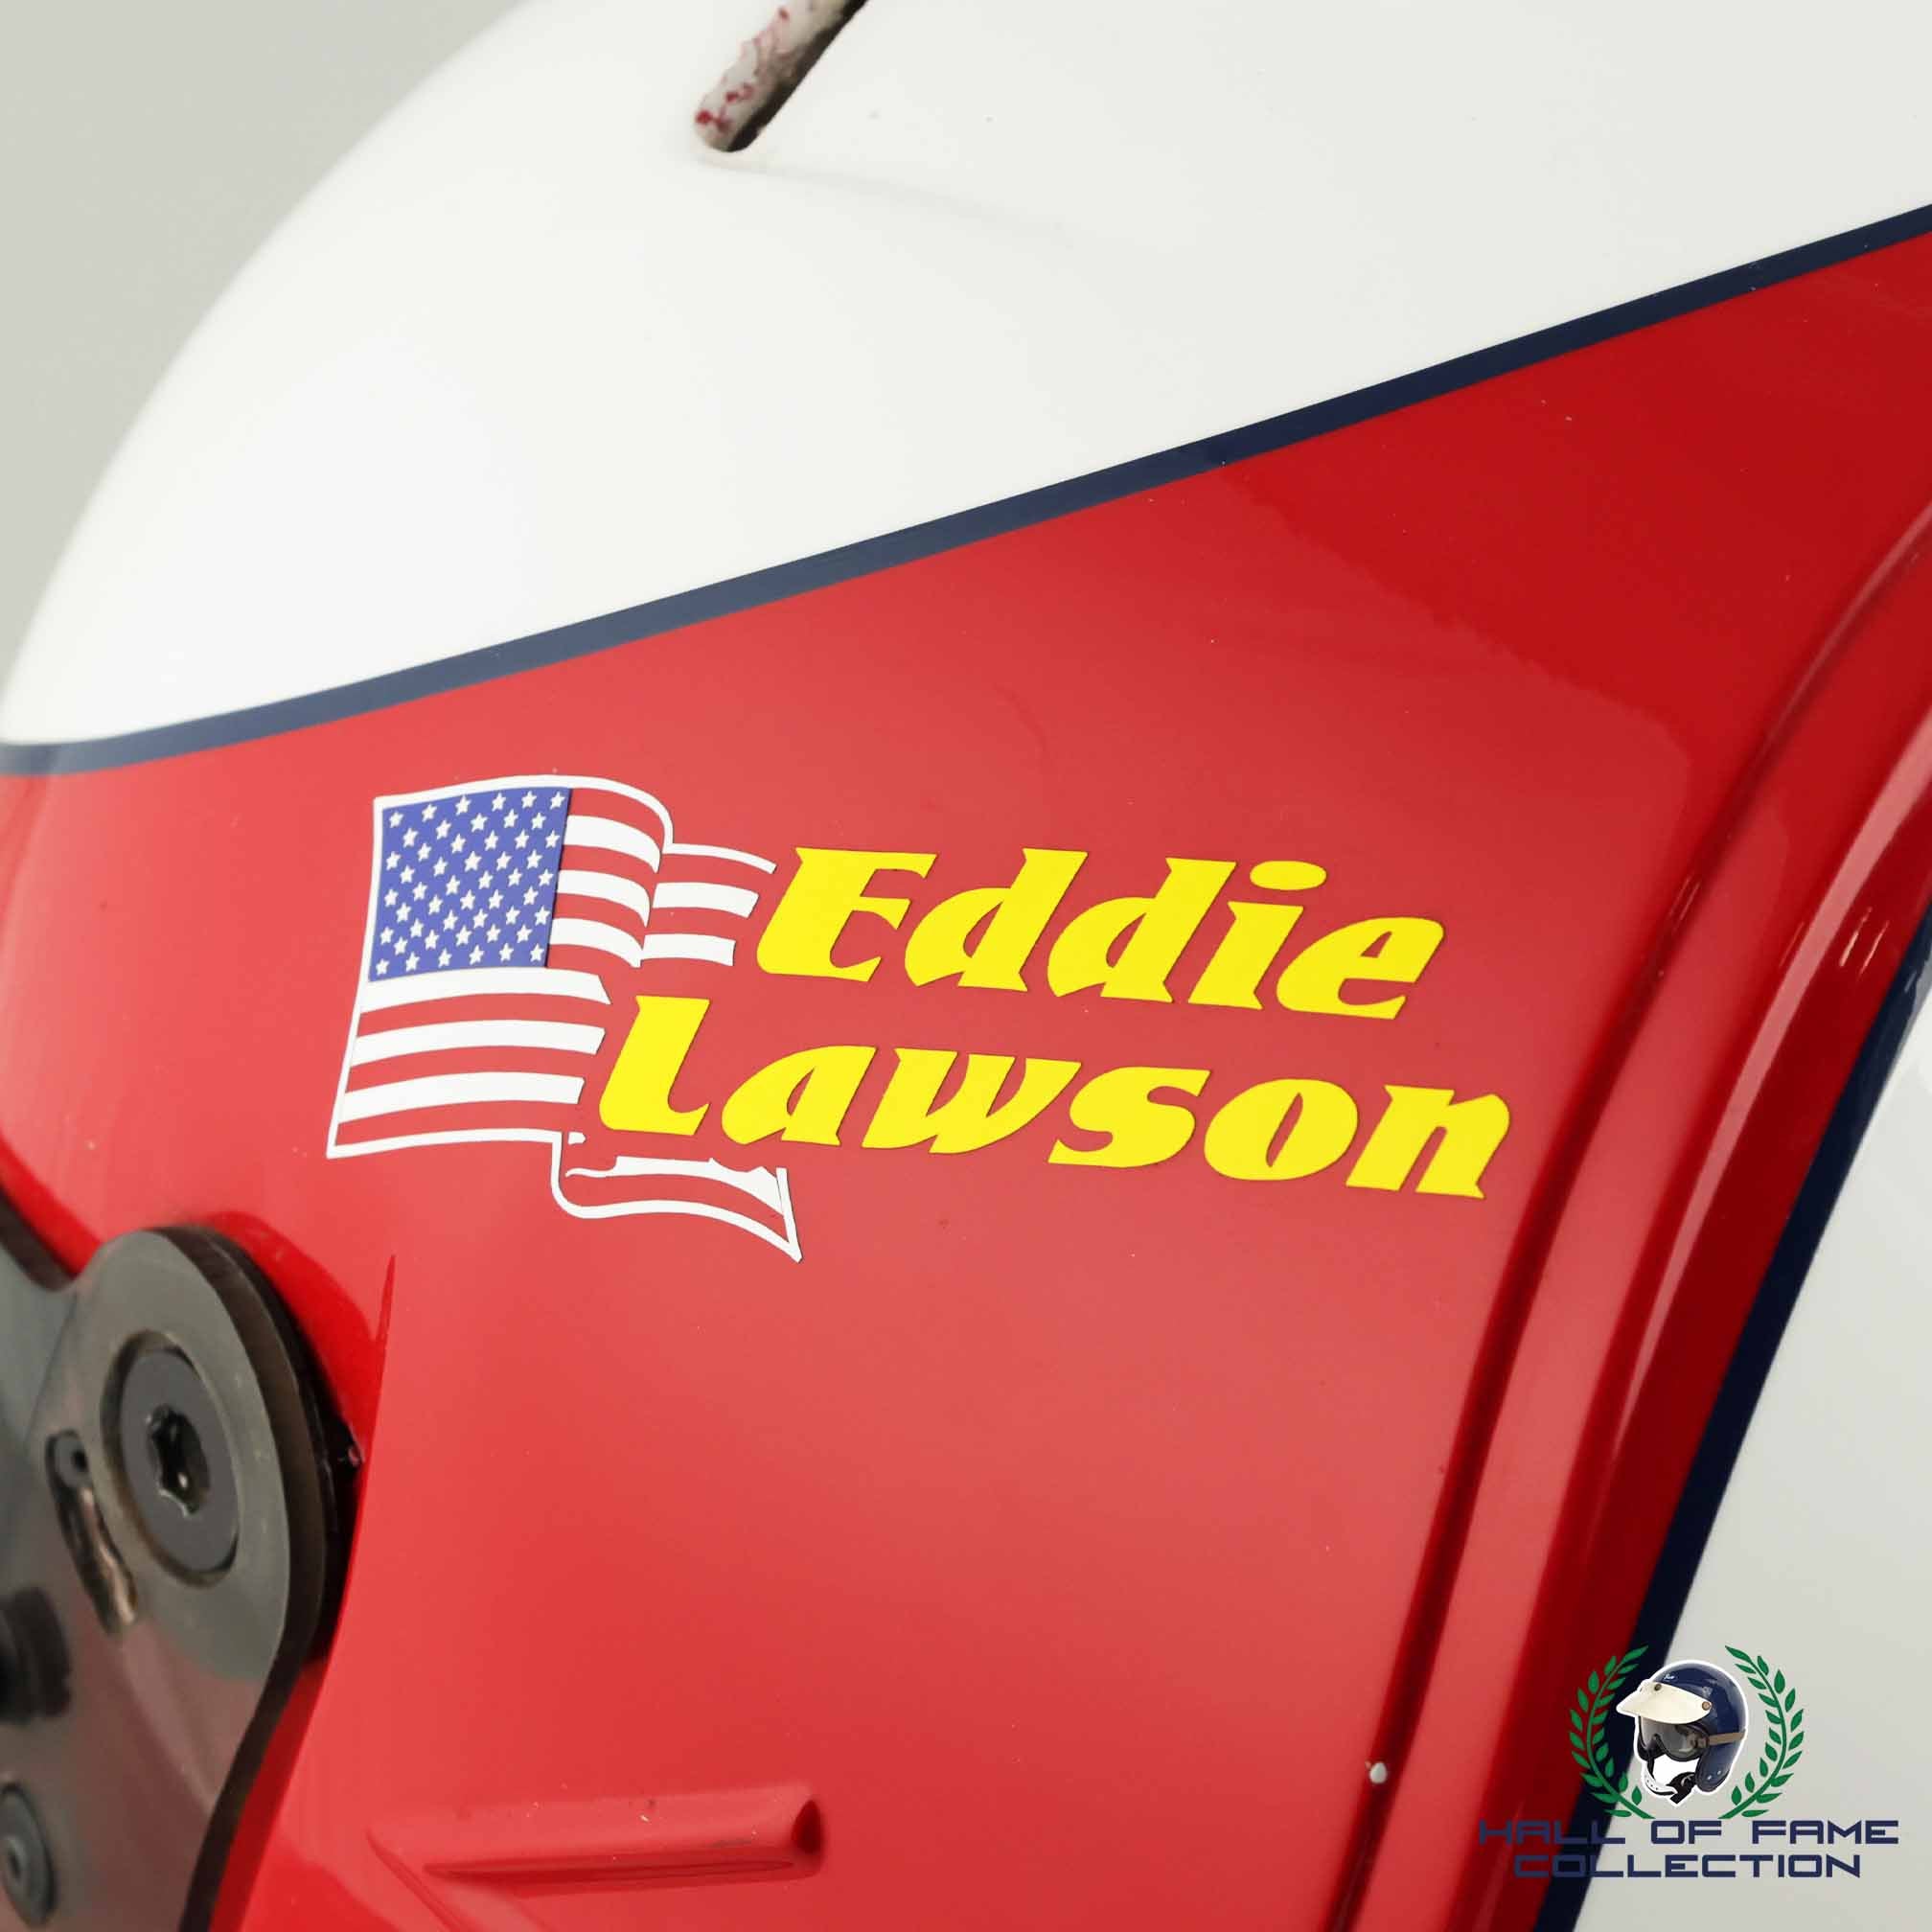 1996 Eddie Lawson Race Used Galles Racing Bell Feuling IndyCar Helmet